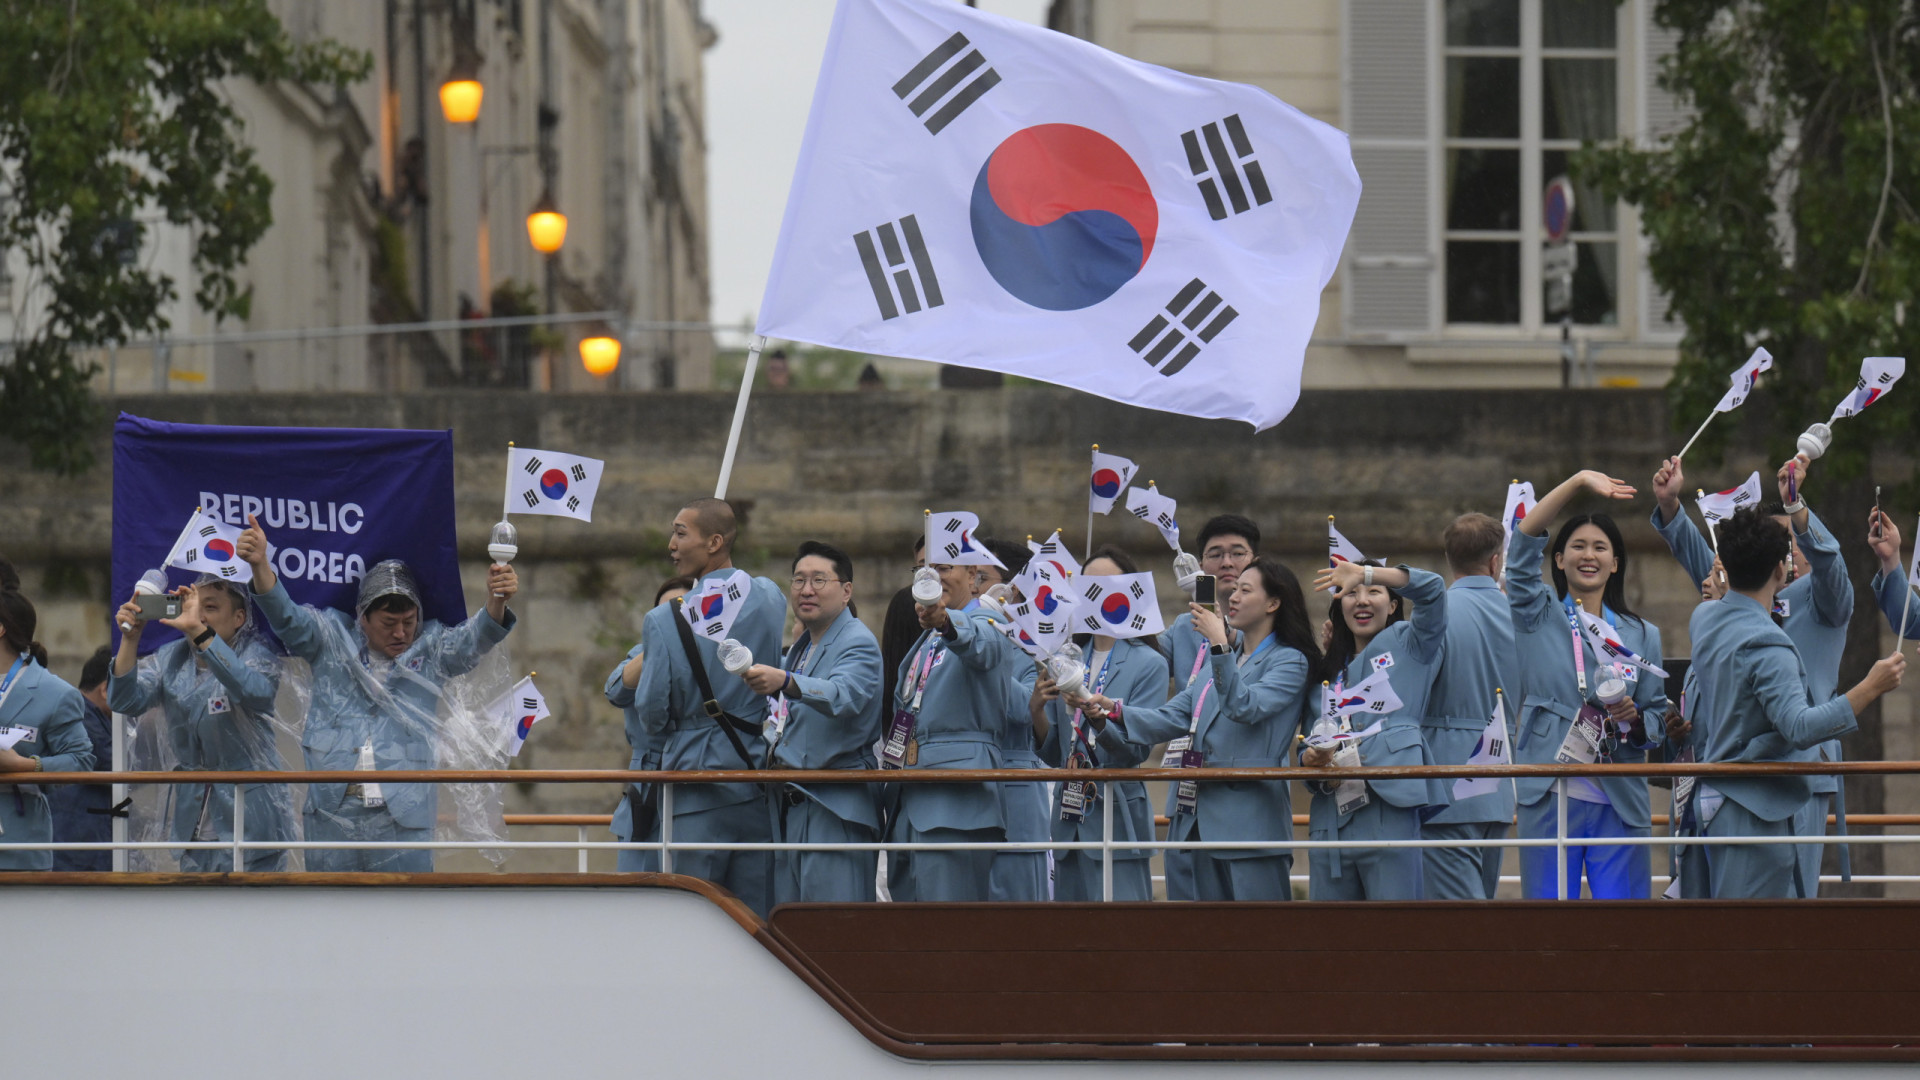 Nova gafe em Paris'2024. Coreia do Sul anunciada... como Coreia do Norte